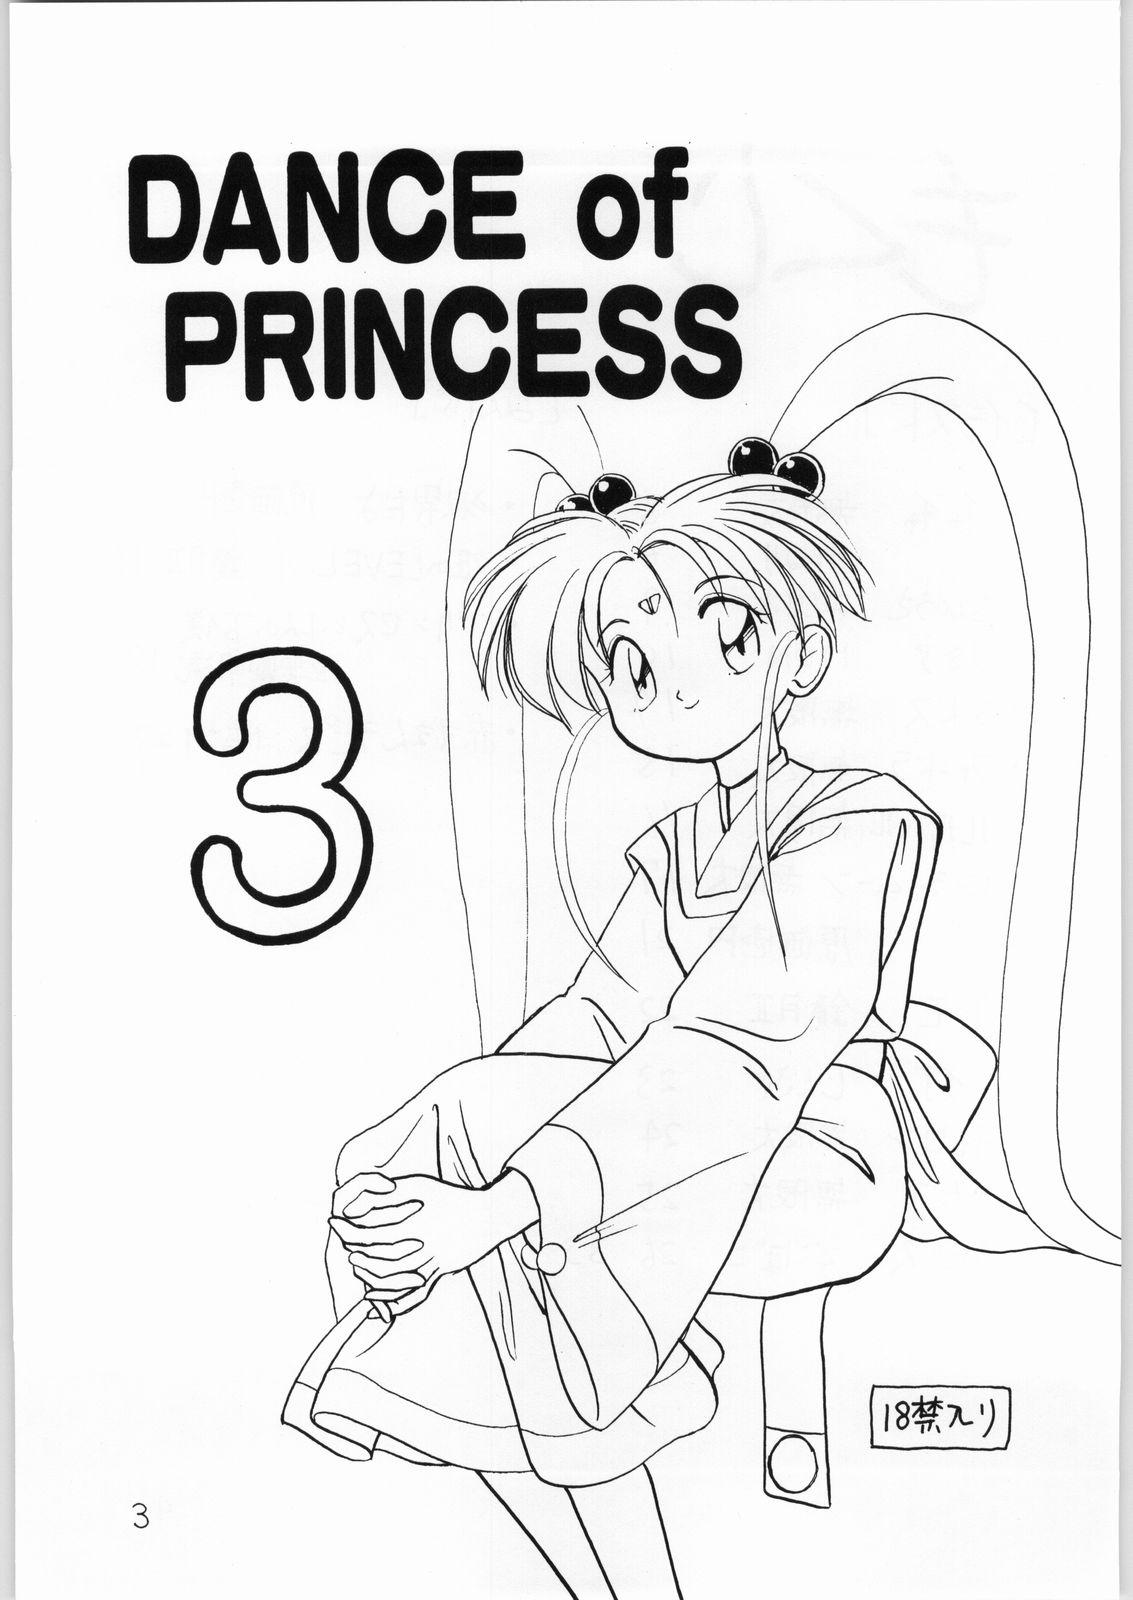 Butt Plug Dance of Princess 3 - Sailor moon Tenchi muyo Akazukin cha cha Minky momo Ng knight lamune and 40 Ride - Page 2